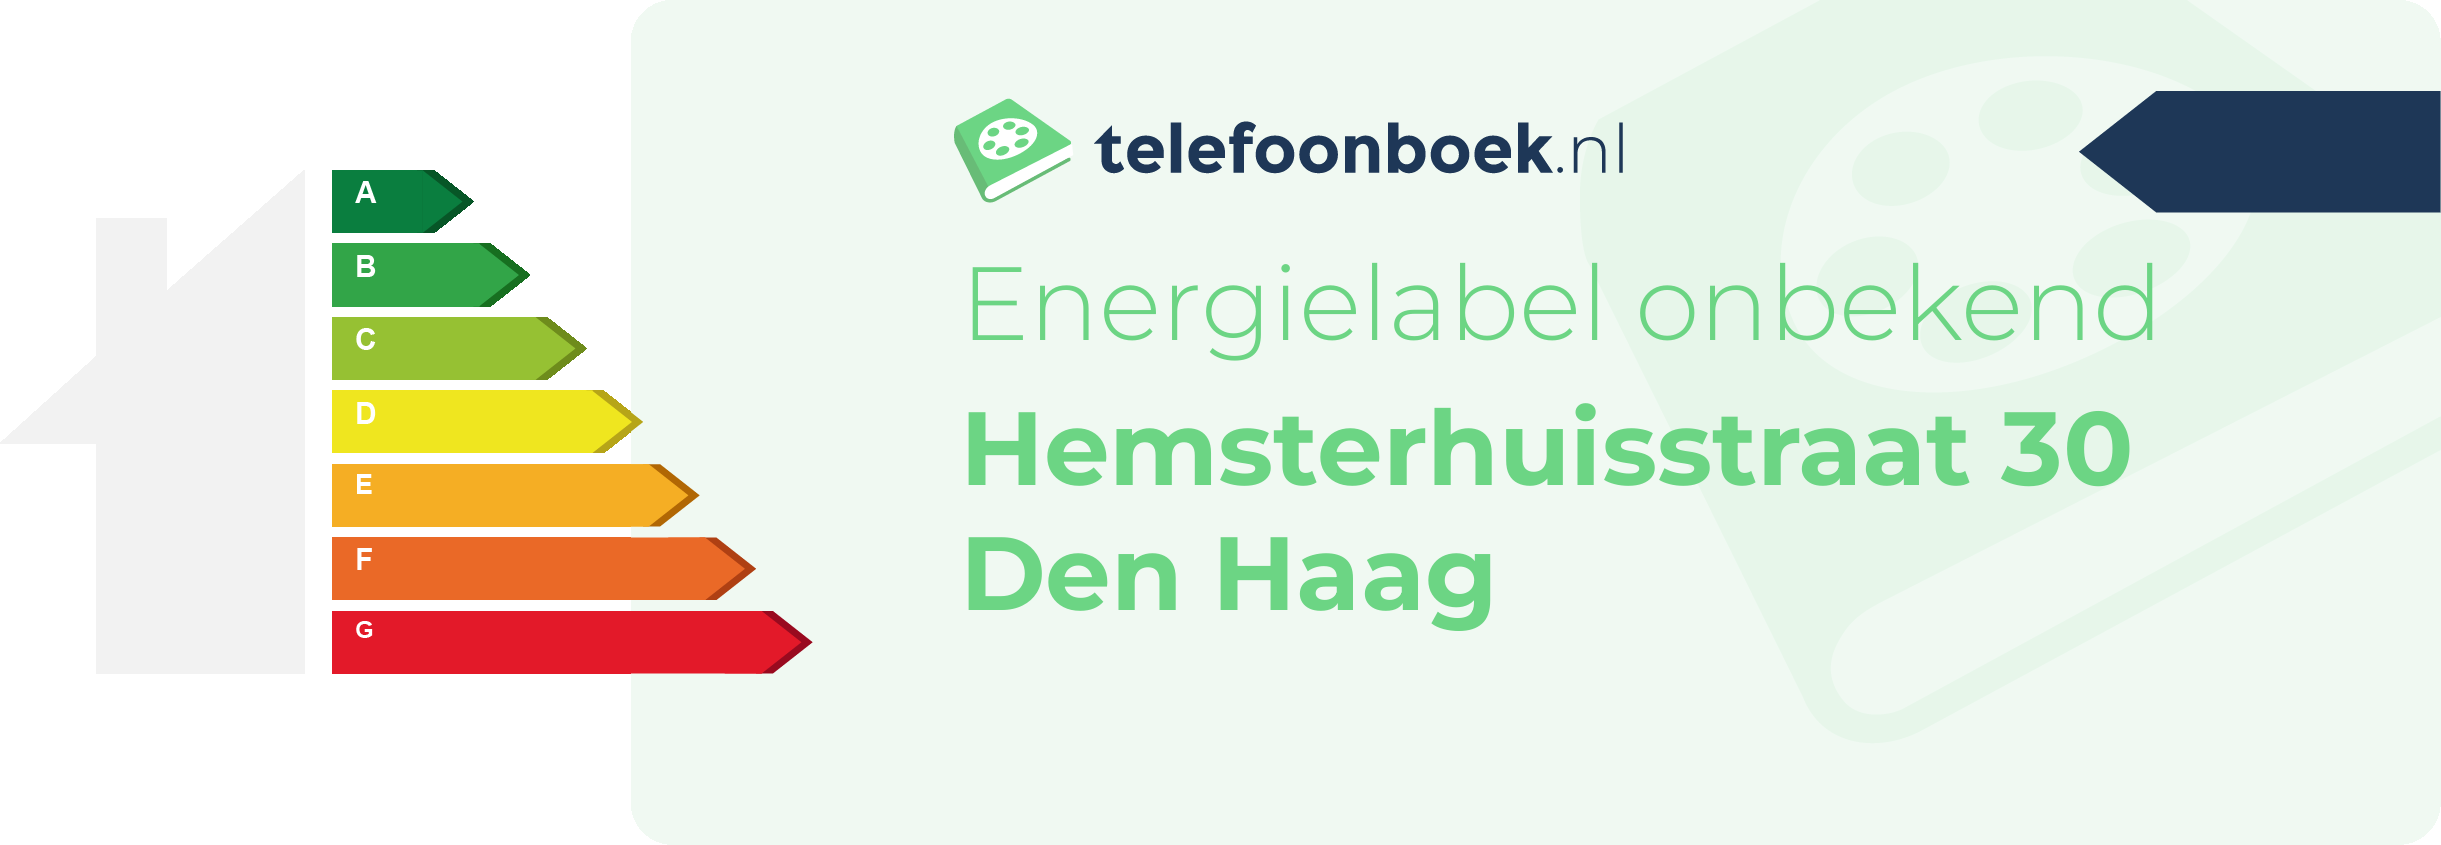 Energielabel Hemsterhuisstraat 30 Den Haag